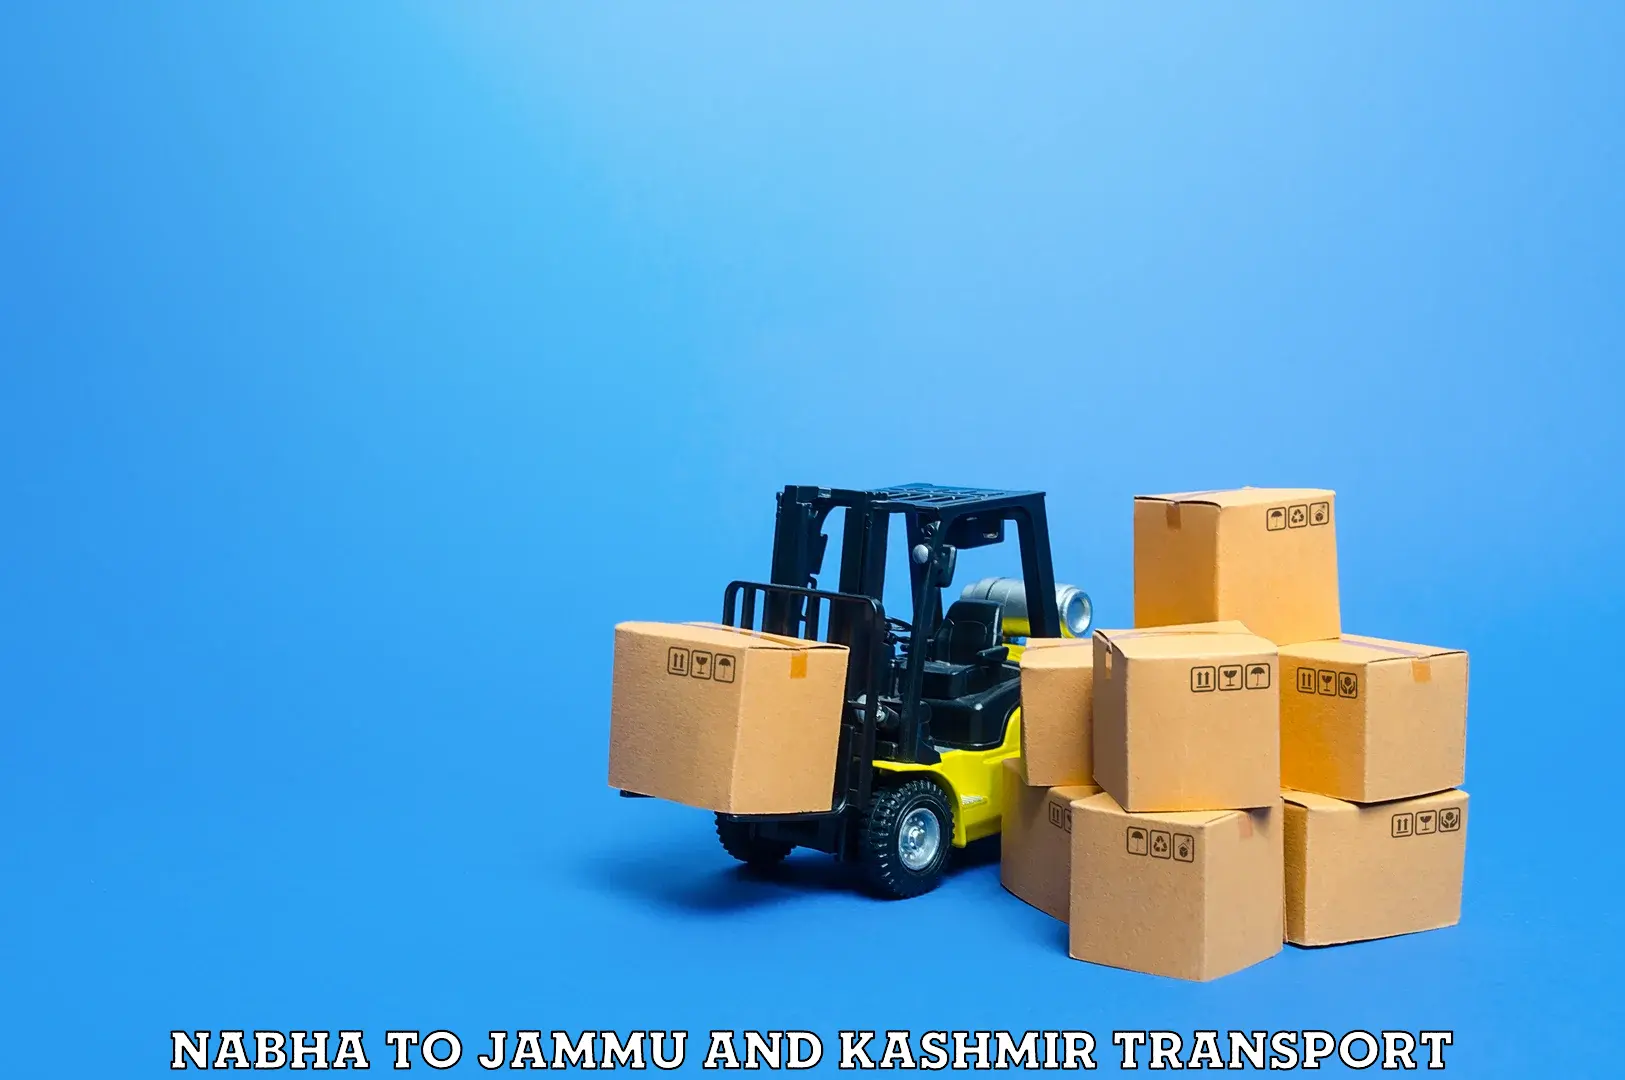 Truck transport companies in India Nabha to Kupwara